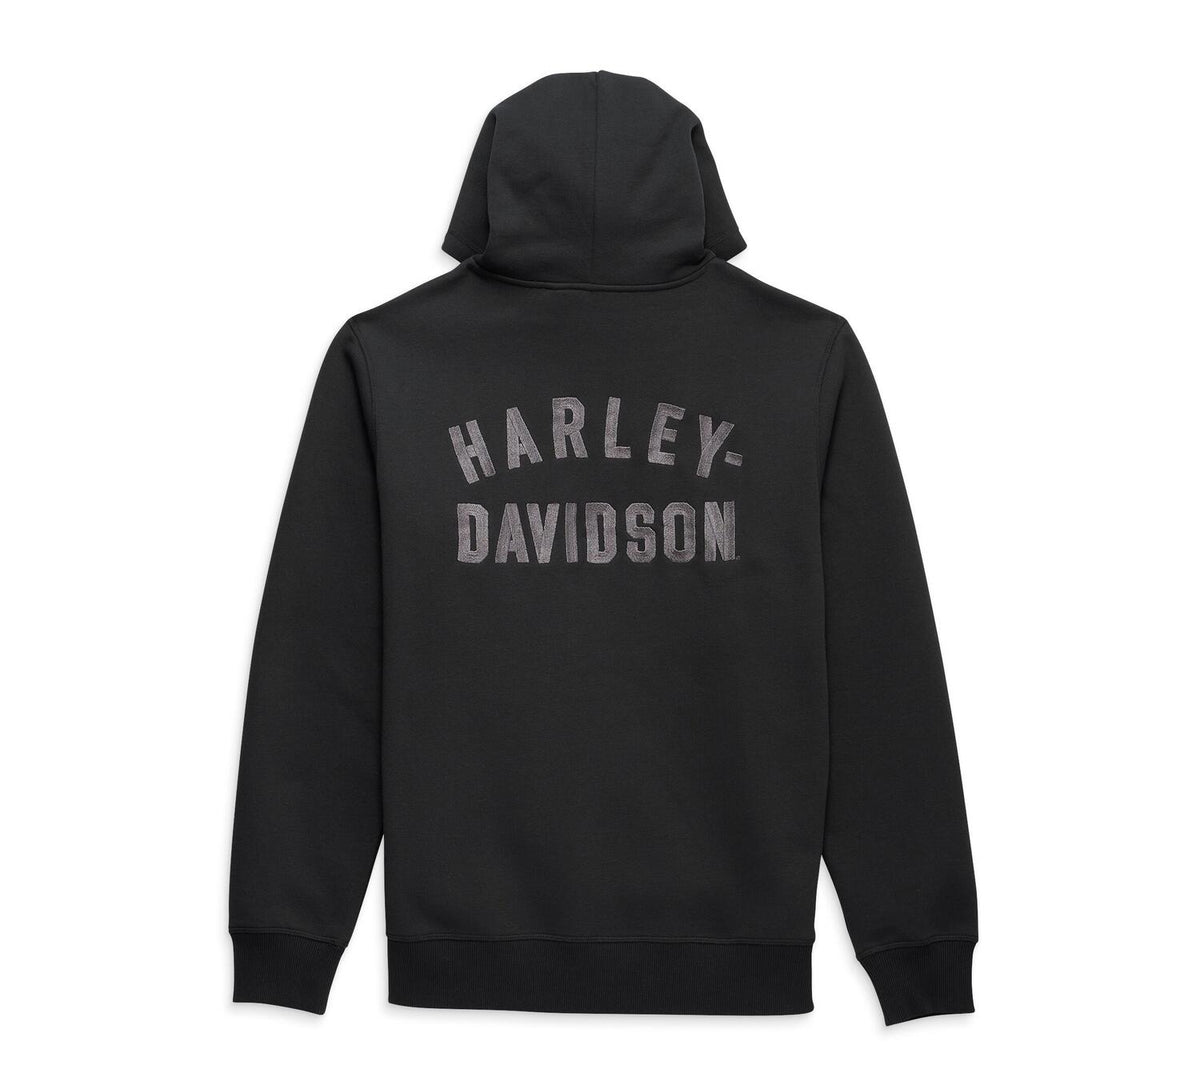 harley davidson-partes y accesorios harley davidson-diseño harley